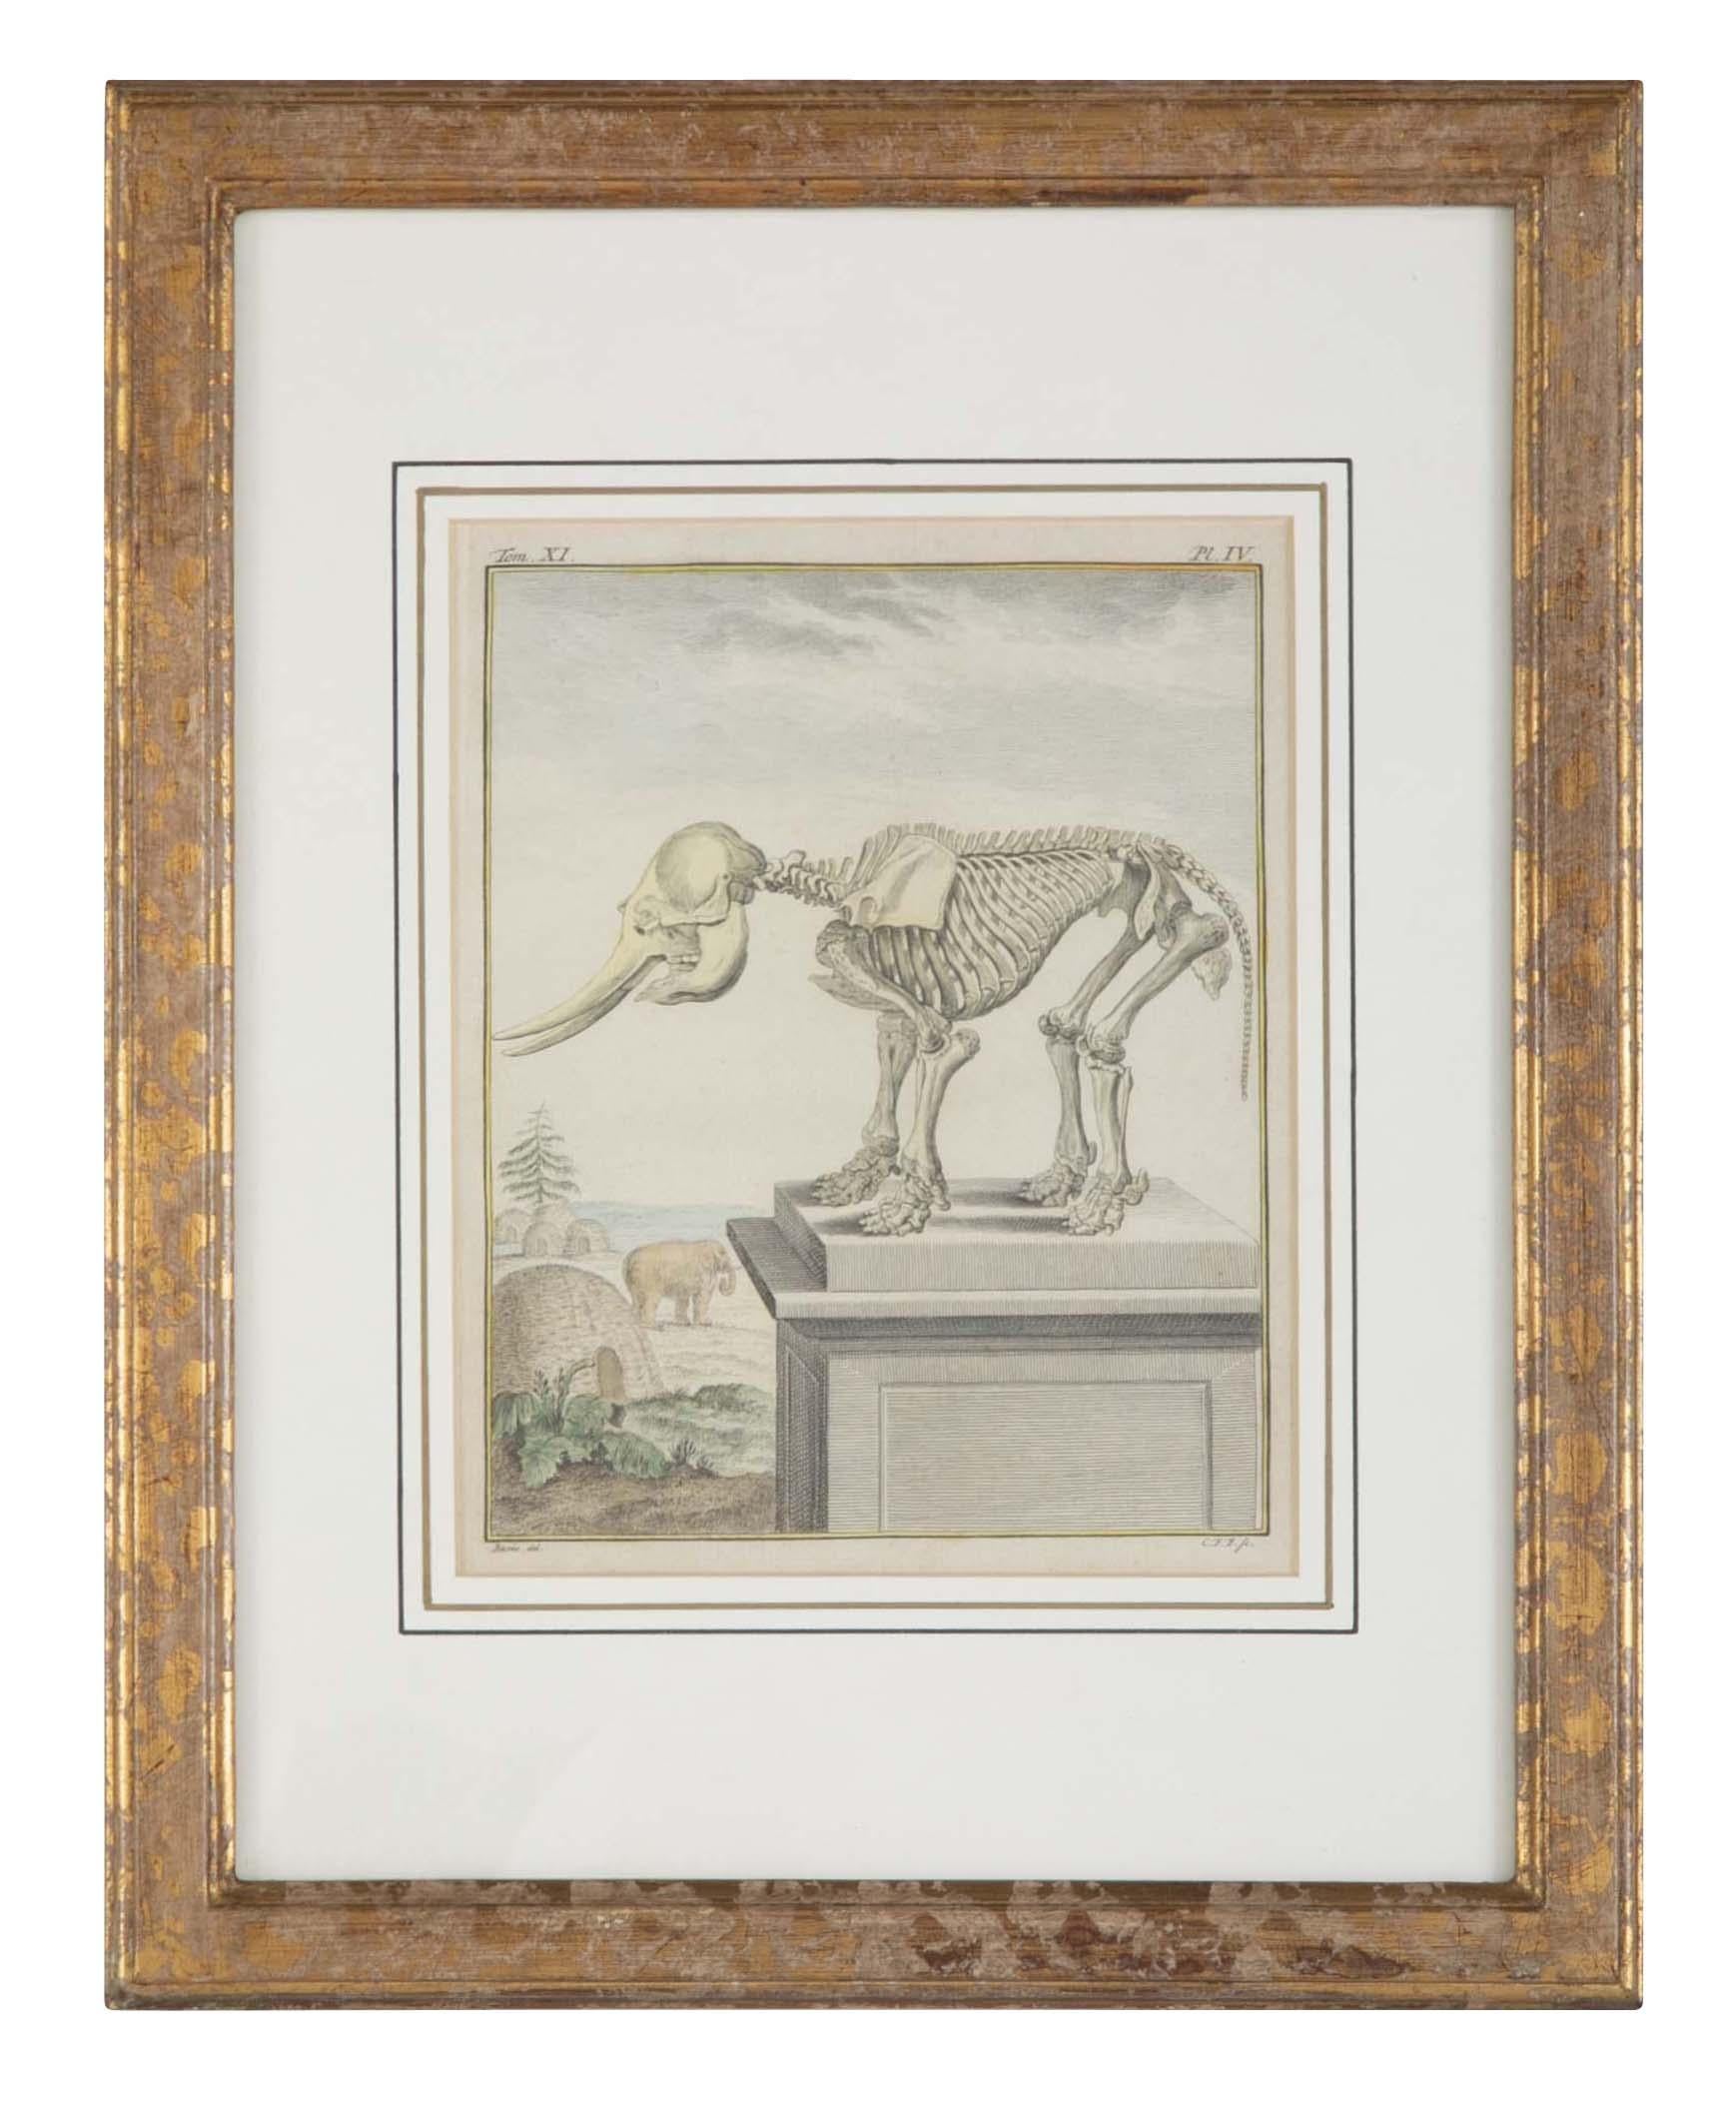 Papier Gravure française du 18e siècle, colorée à la main, représentant un squelette d'éléphant en vente